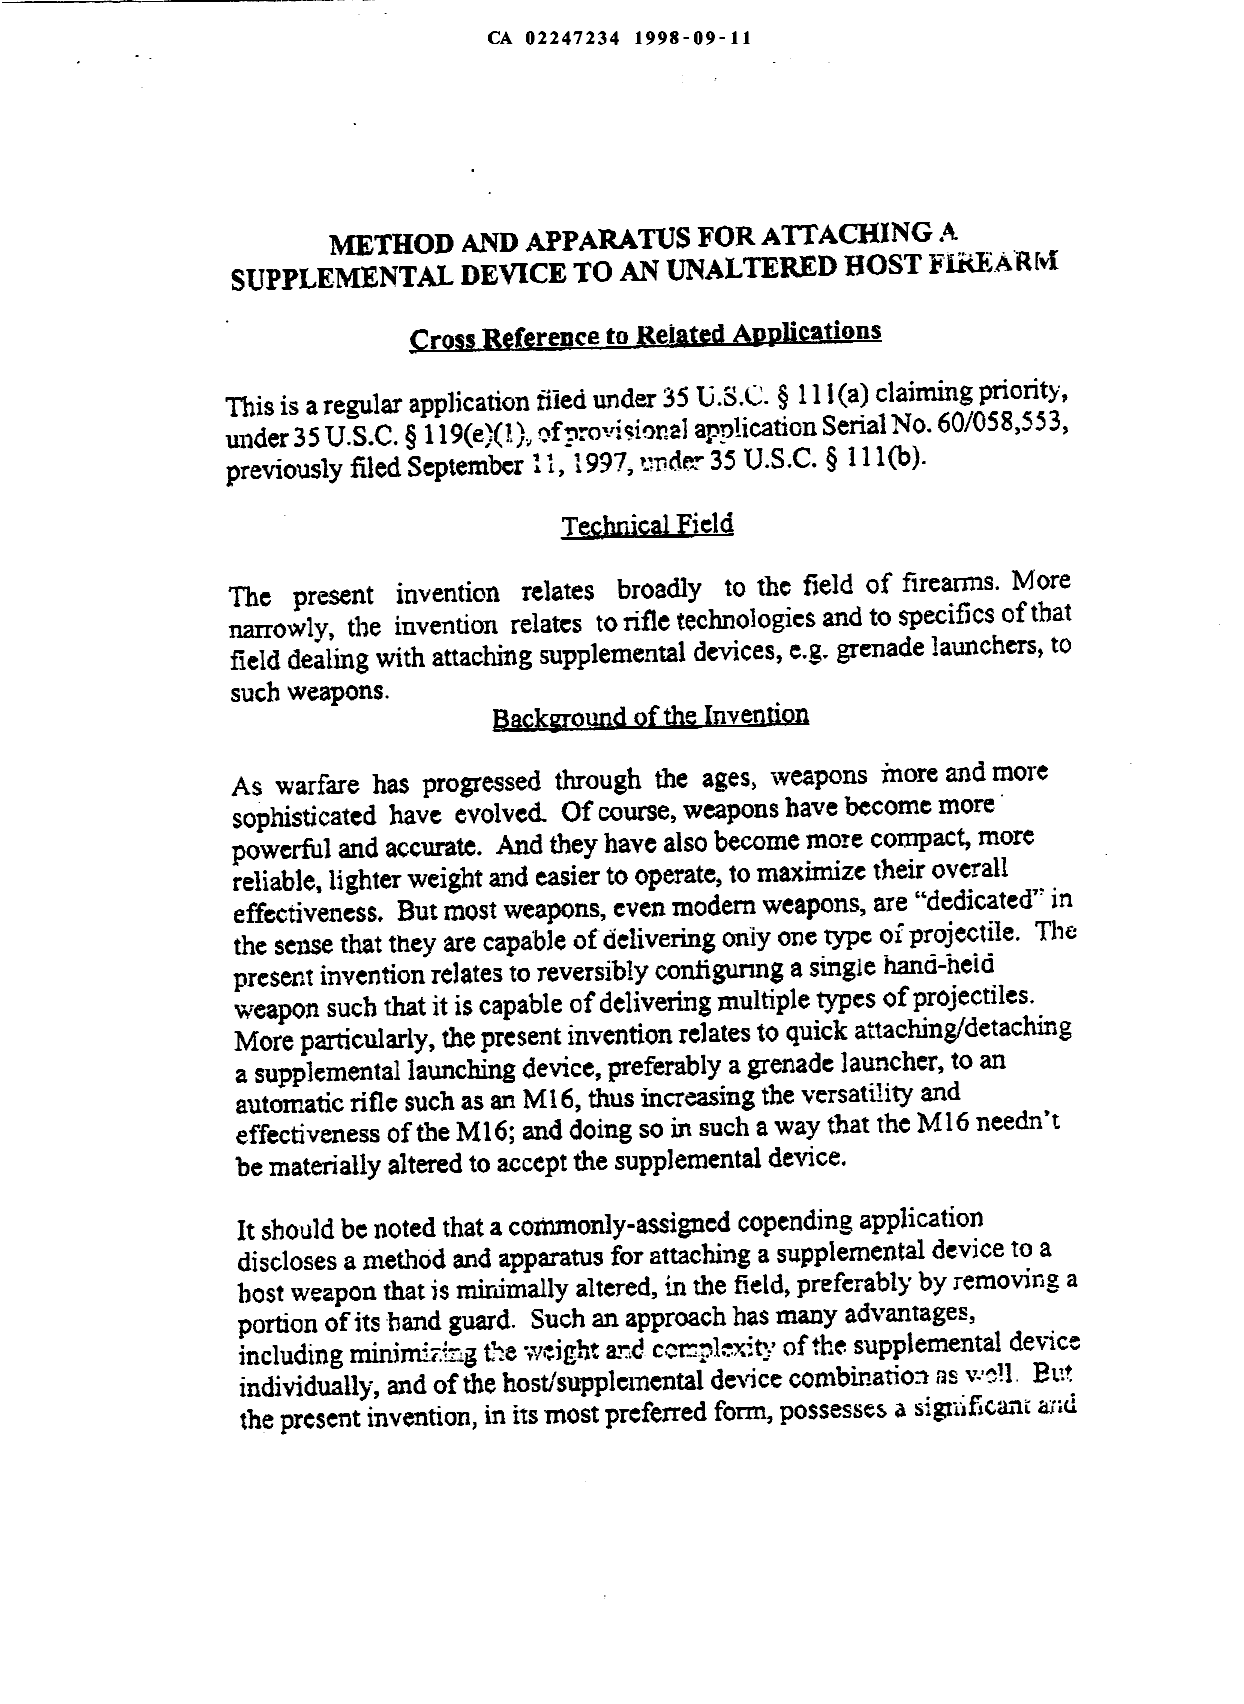 Canadian Patent Document 2247234. Description 19980911. Image 1 of 14